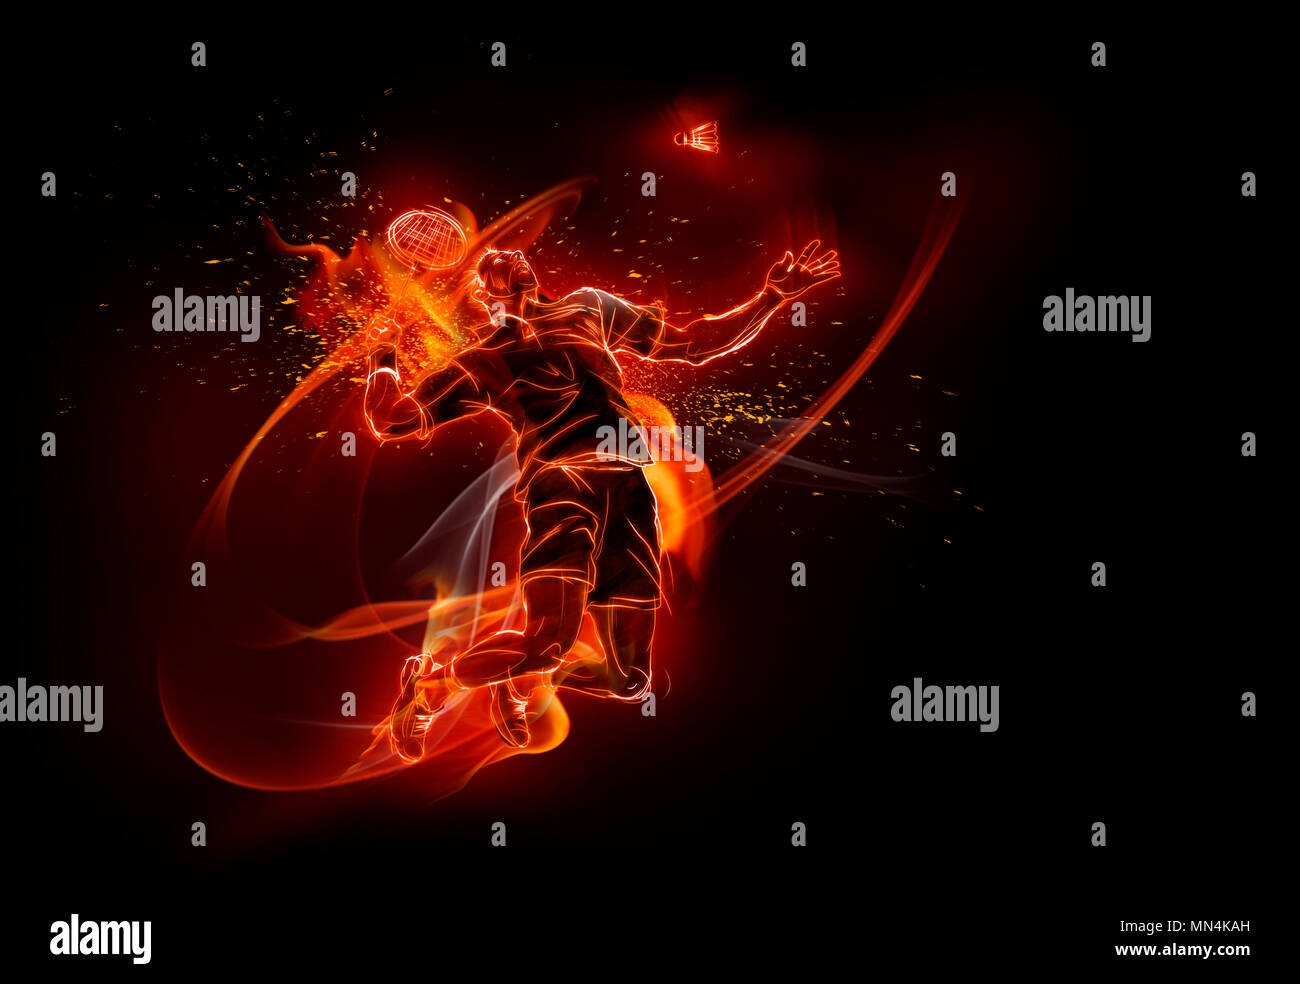 Computer immagine generata maschile di badminton player Foto Stock